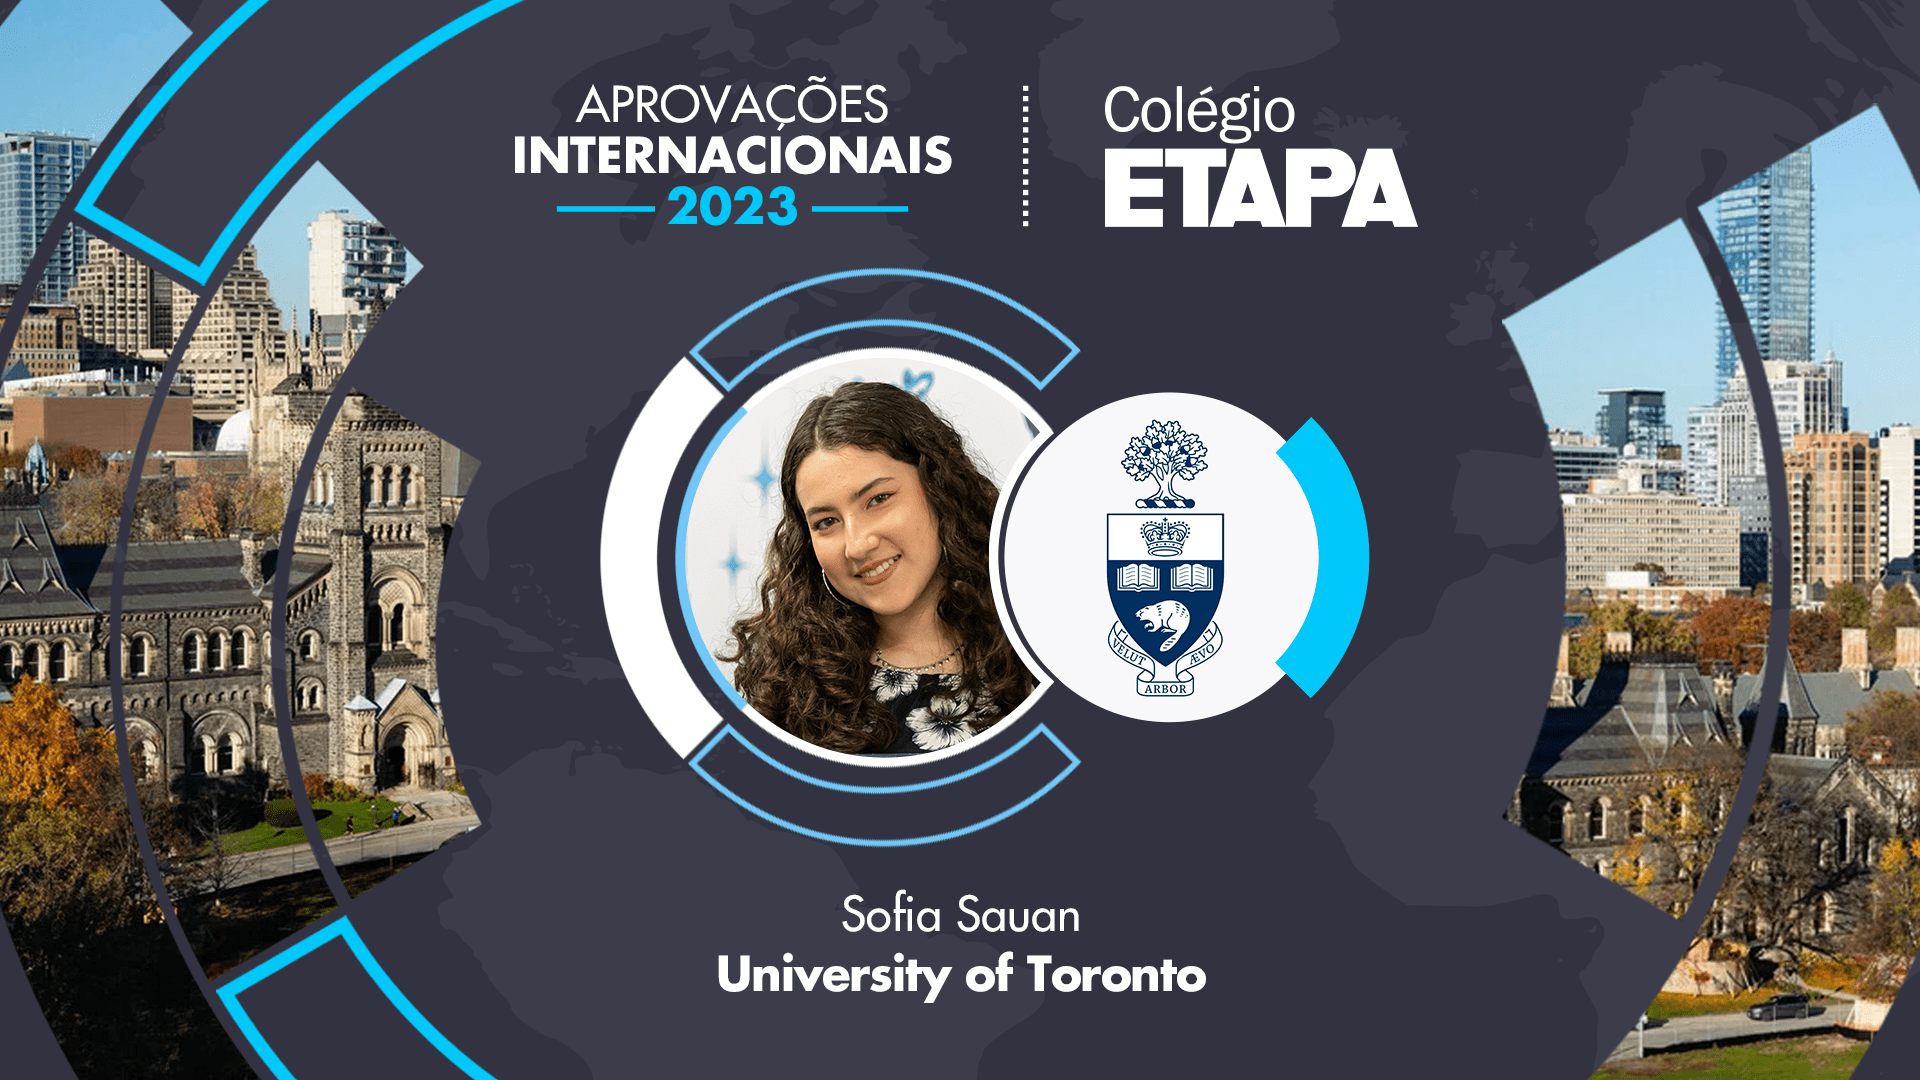 Sofia Kawai Sauan, ex-aluna do Colégio Etapa, se prepara para estudar Engenharia Industrial na University of Toronto, no Canadá.